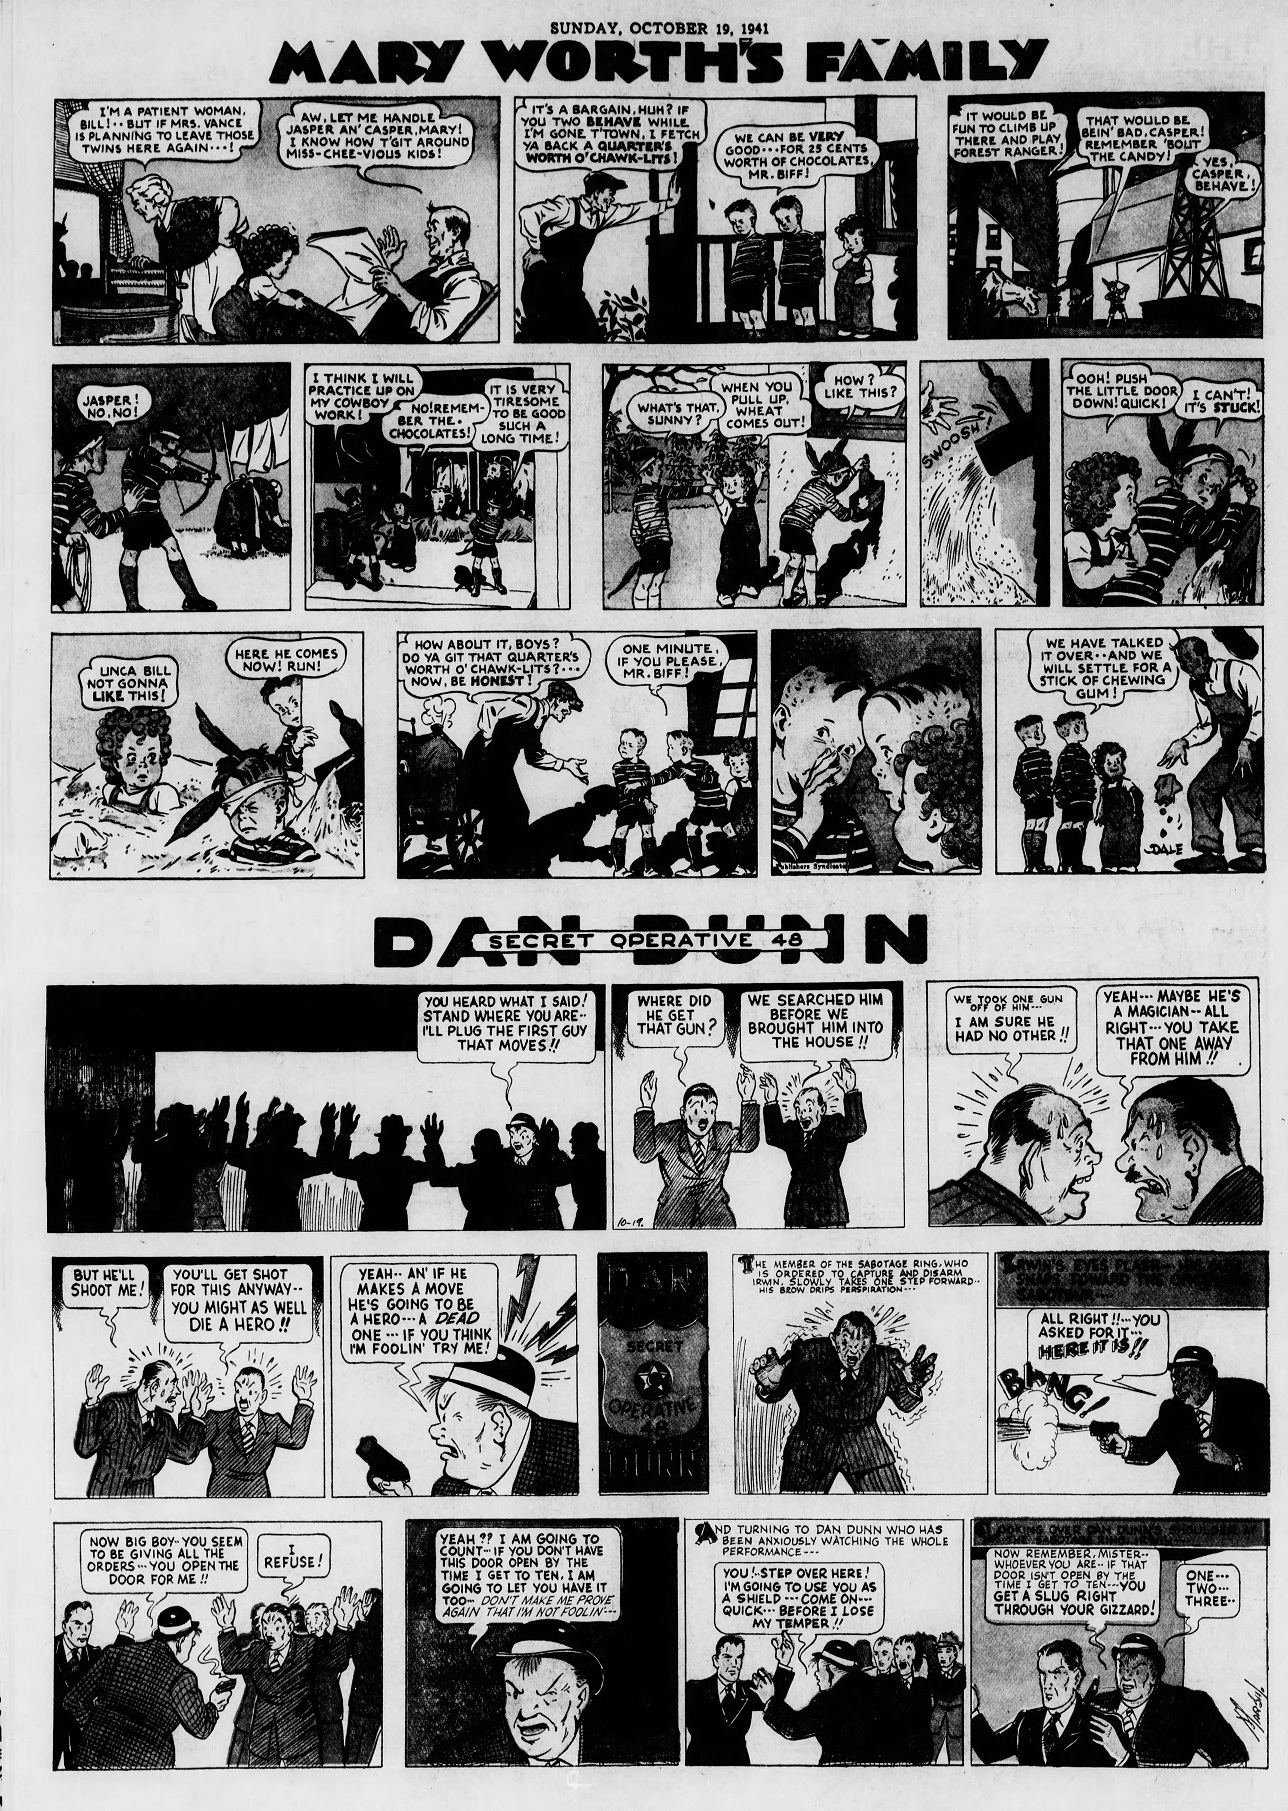 The_Brooklyn_Daily_Eagle_Sun__Oct_19__1941_(7).jpg